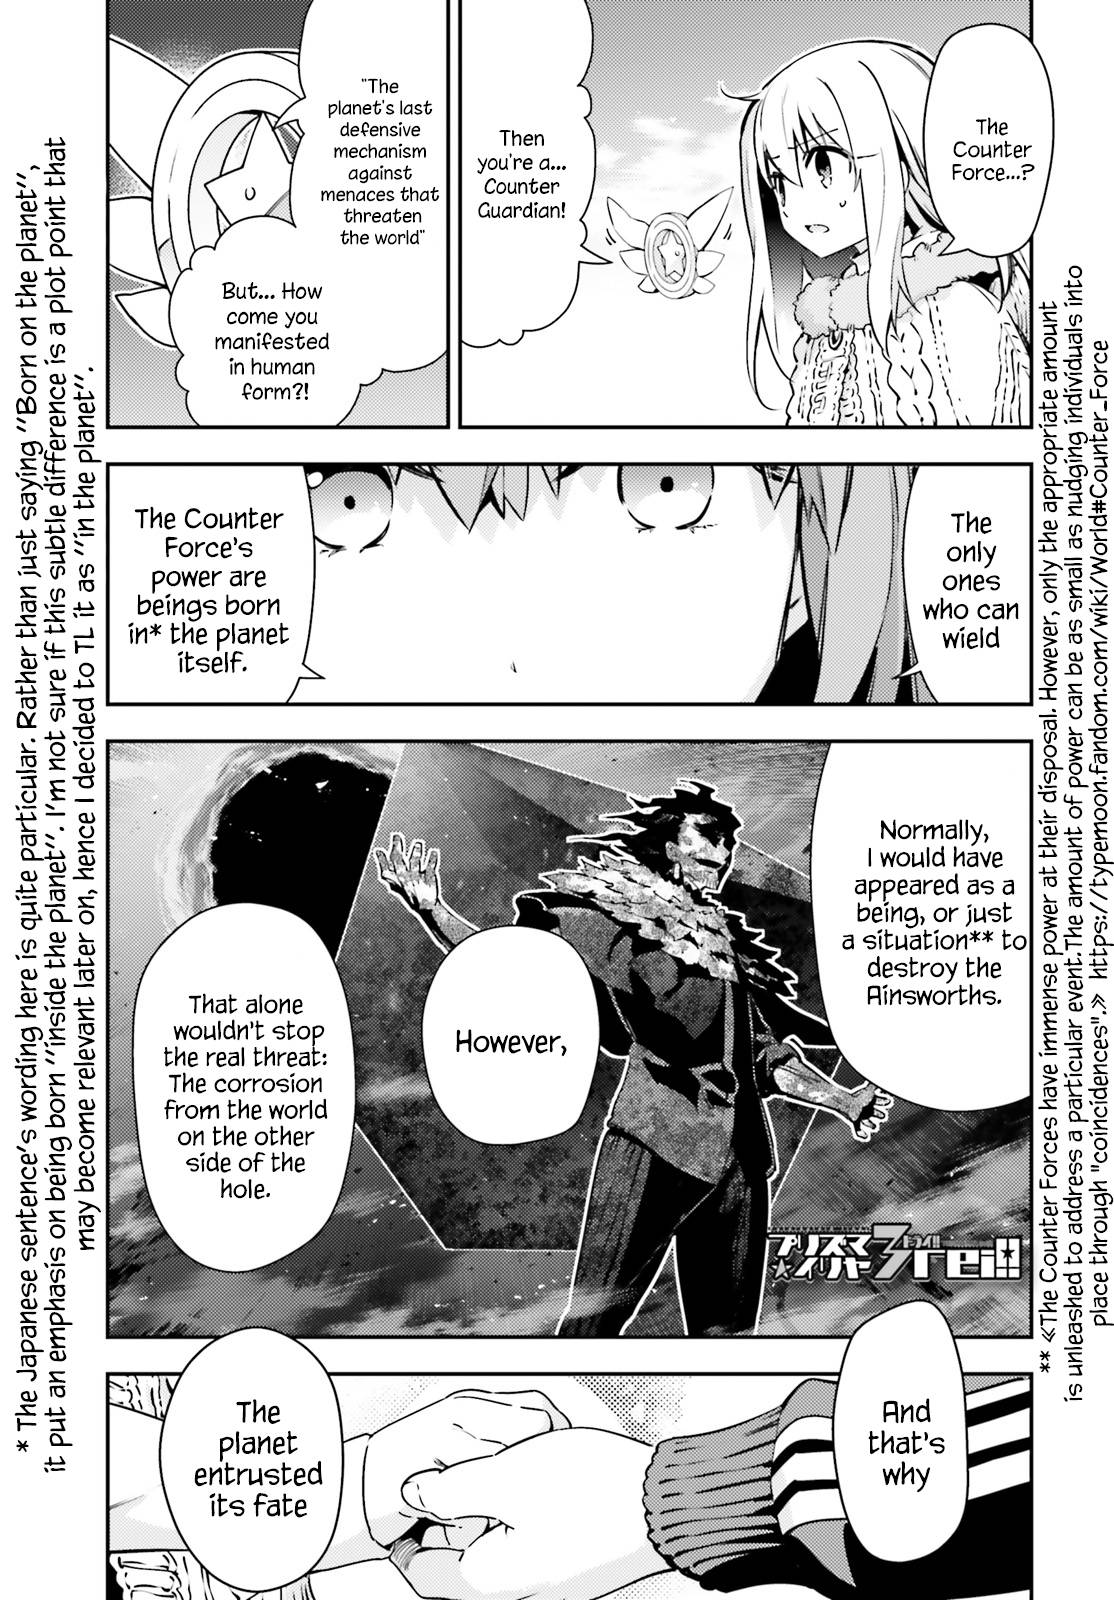 Goblin Slayer Manga Chapter 39, Goblin Slayer Wiki